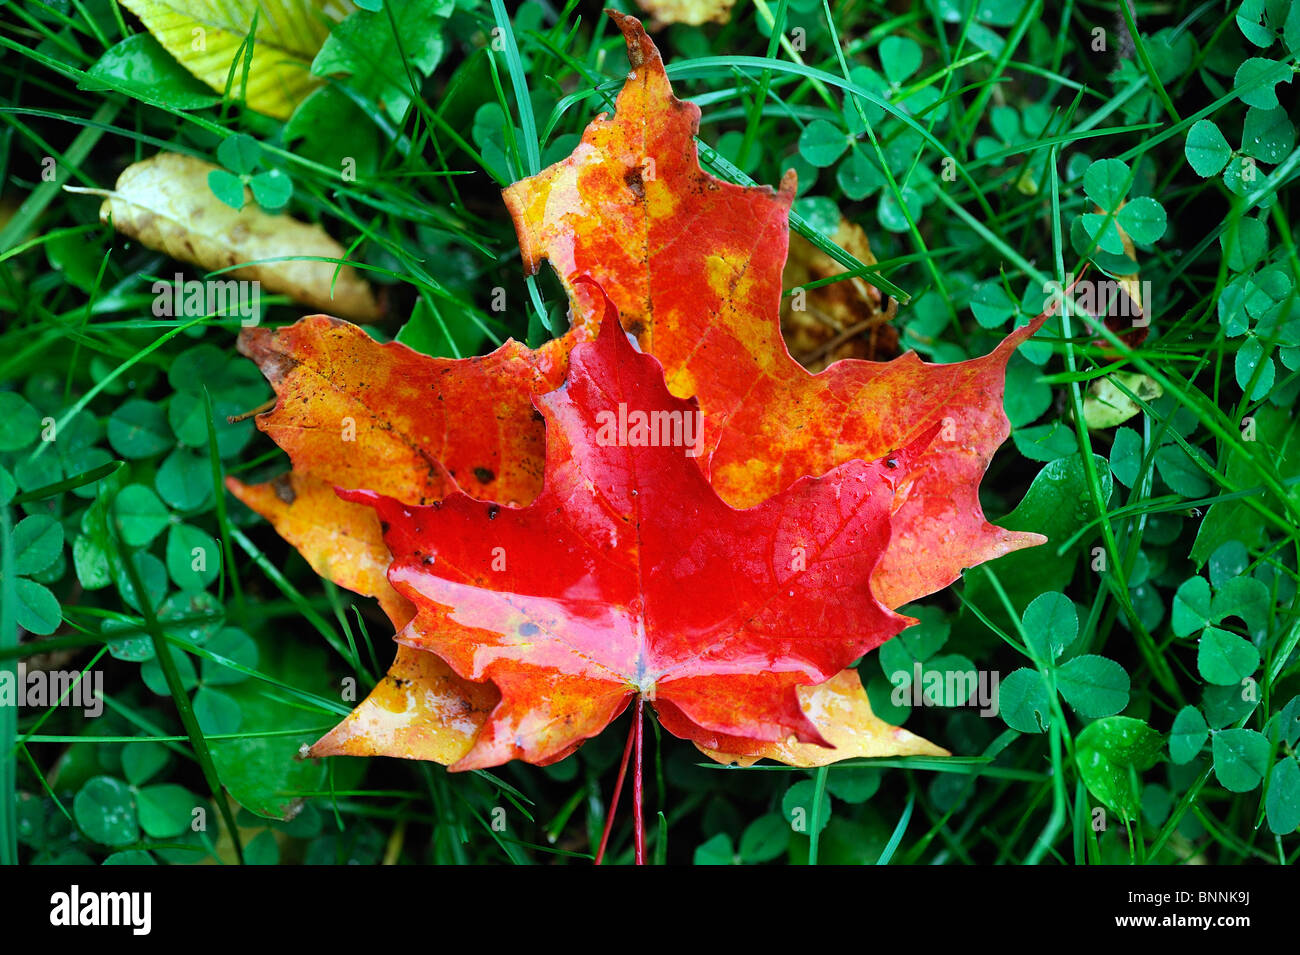 Herbst Farben Farben Blätter Wiese Boden Allegany State Park New York USA Amerika Vereinigte Staaten von Amerika im Herbst Natur Stockfoto